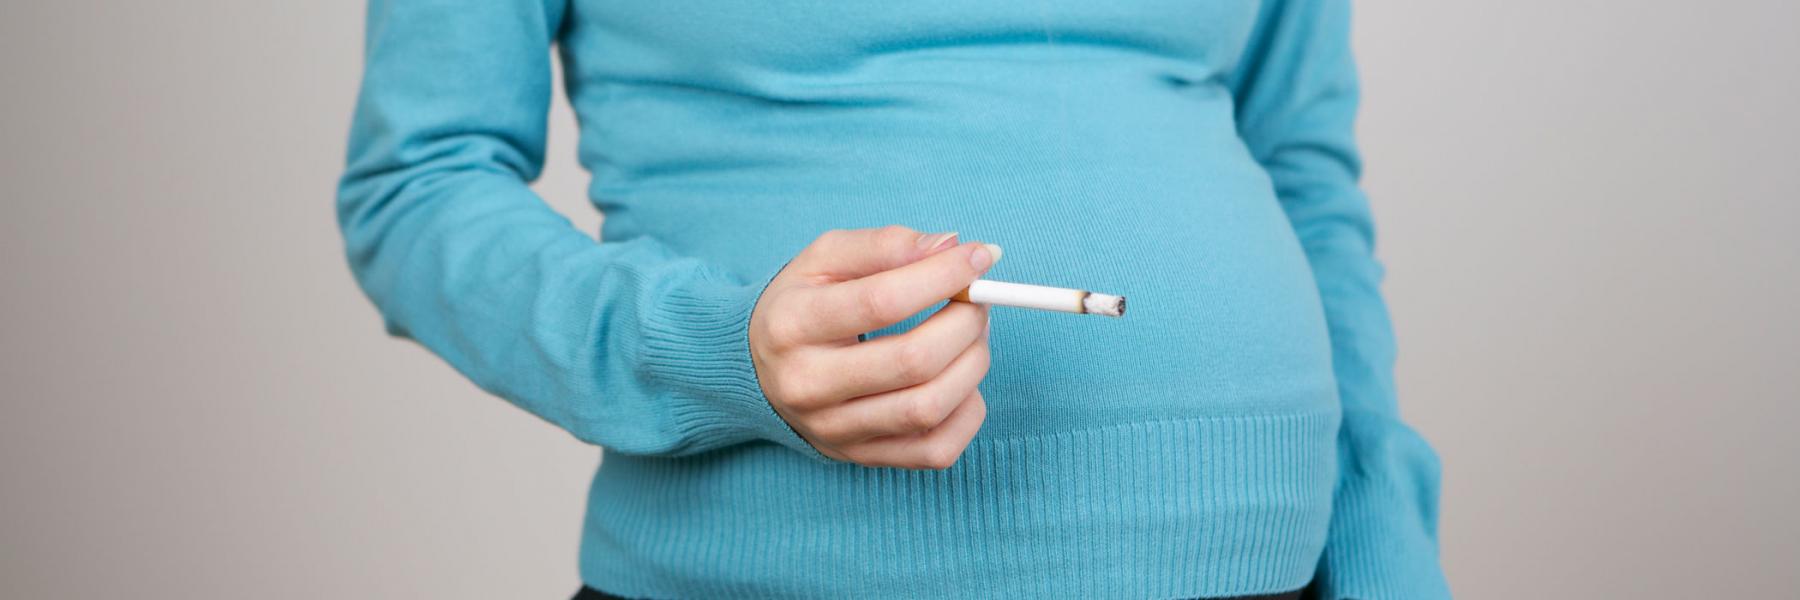 7 من أخطار التدخين أثناء الحمل..تعرفي عليها